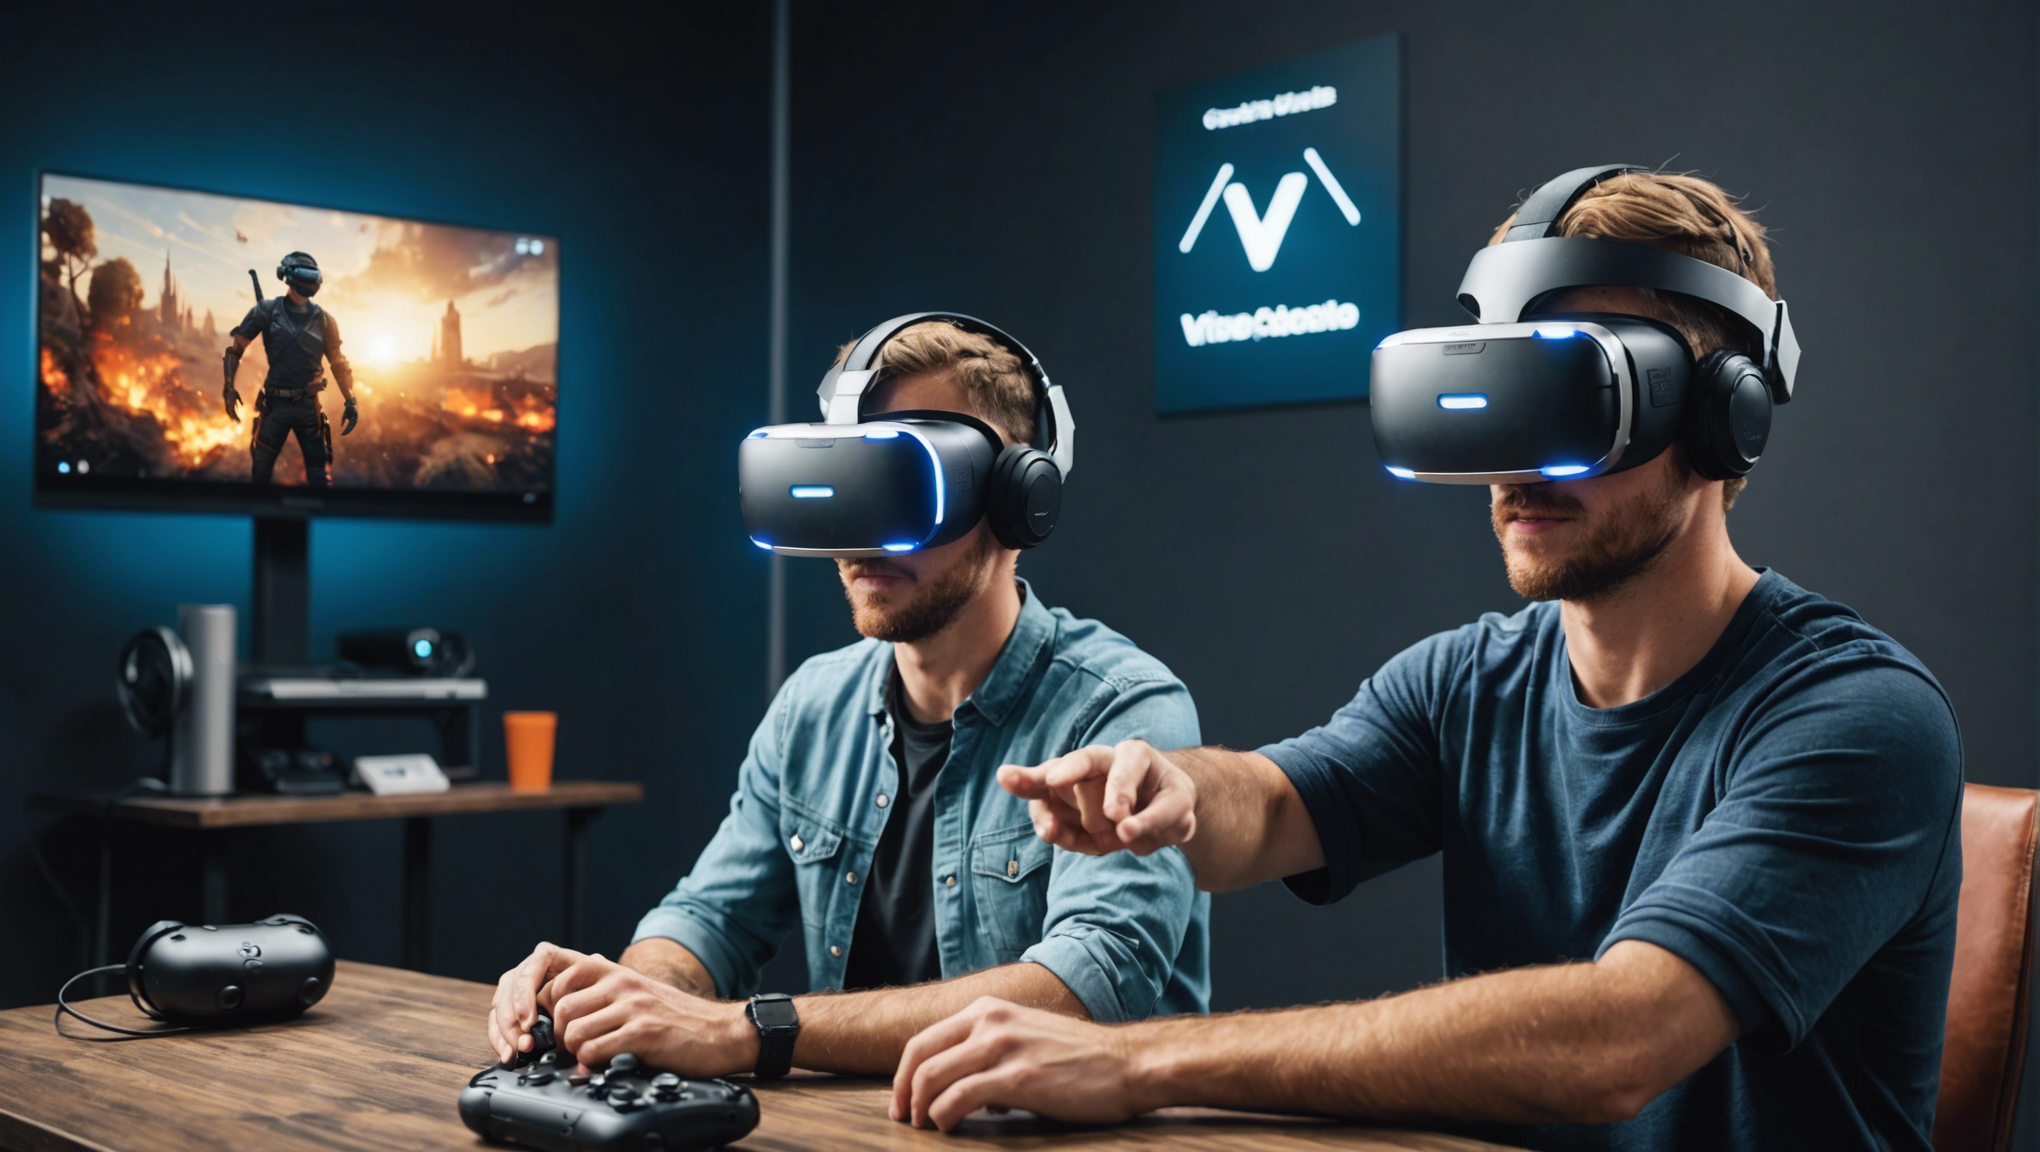 découvrez les avantages des jeux vidéo en réalité virtuelle (vr) et plongez-vous dans une expérience immersive unique. profitez d'une interactivité accrue et explorez des mondes virtuels captivants.